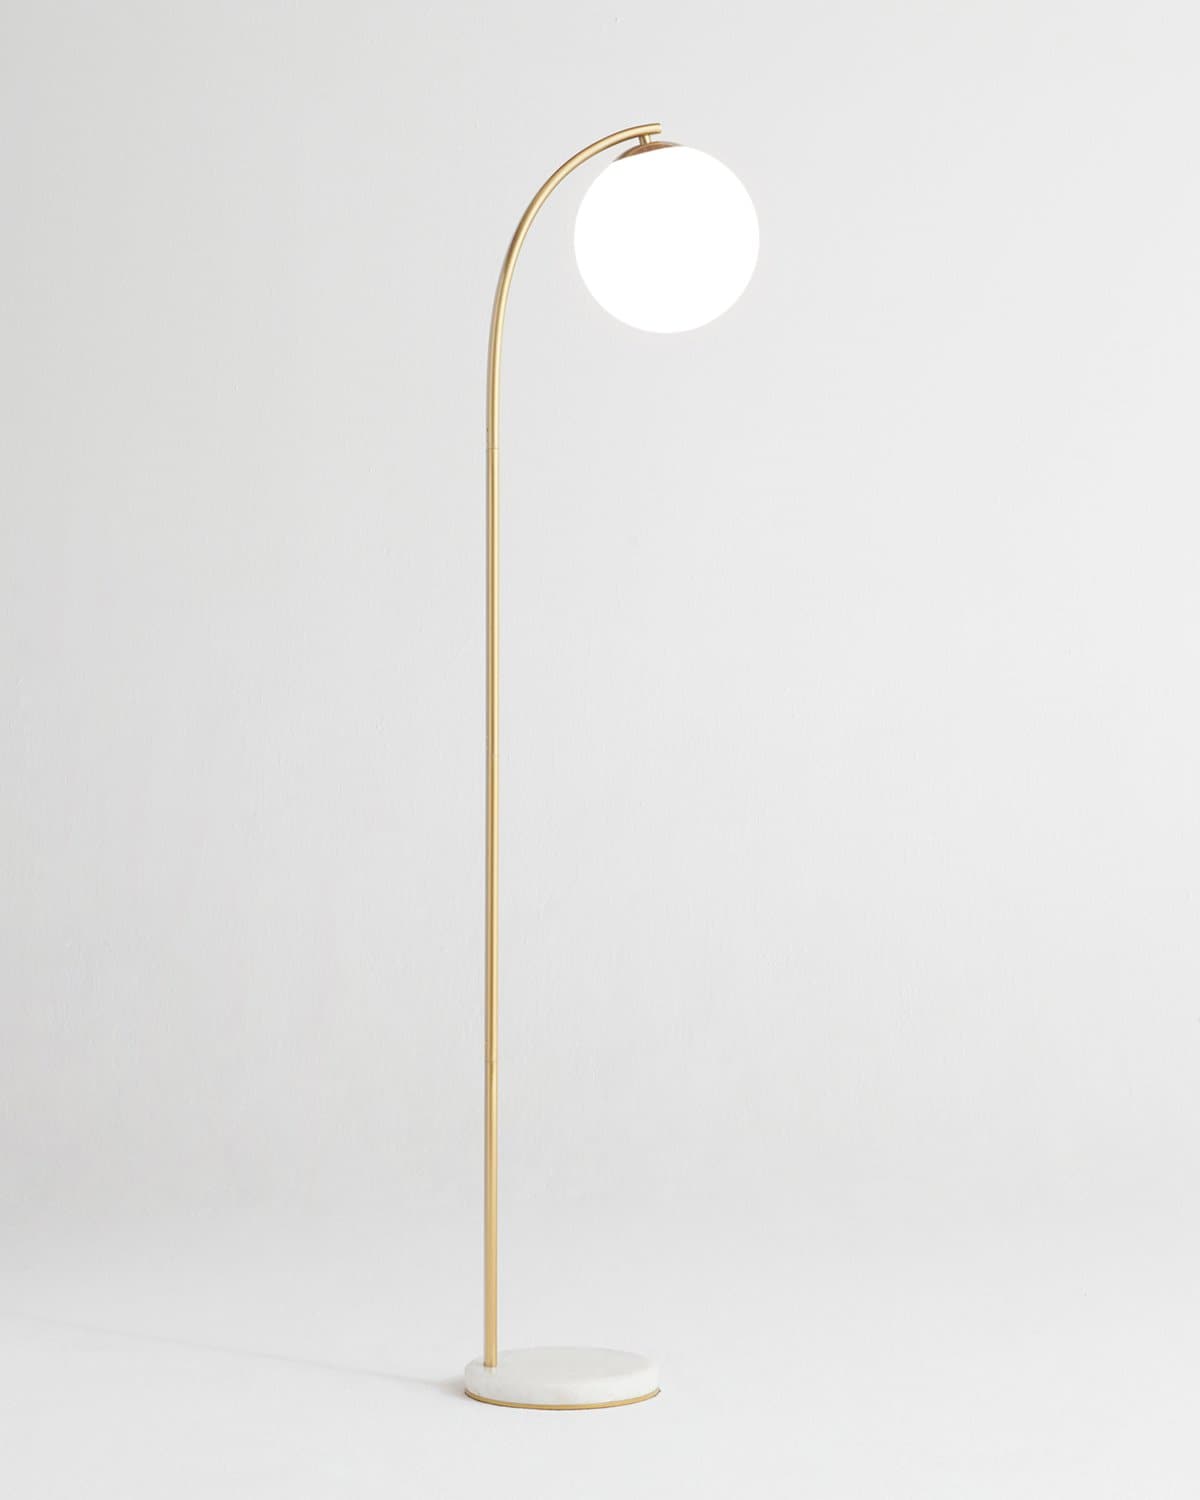 vergroting Puno Afkorten Luna Drop LED Floor Lamp by Brightech / Neighborhood Goods